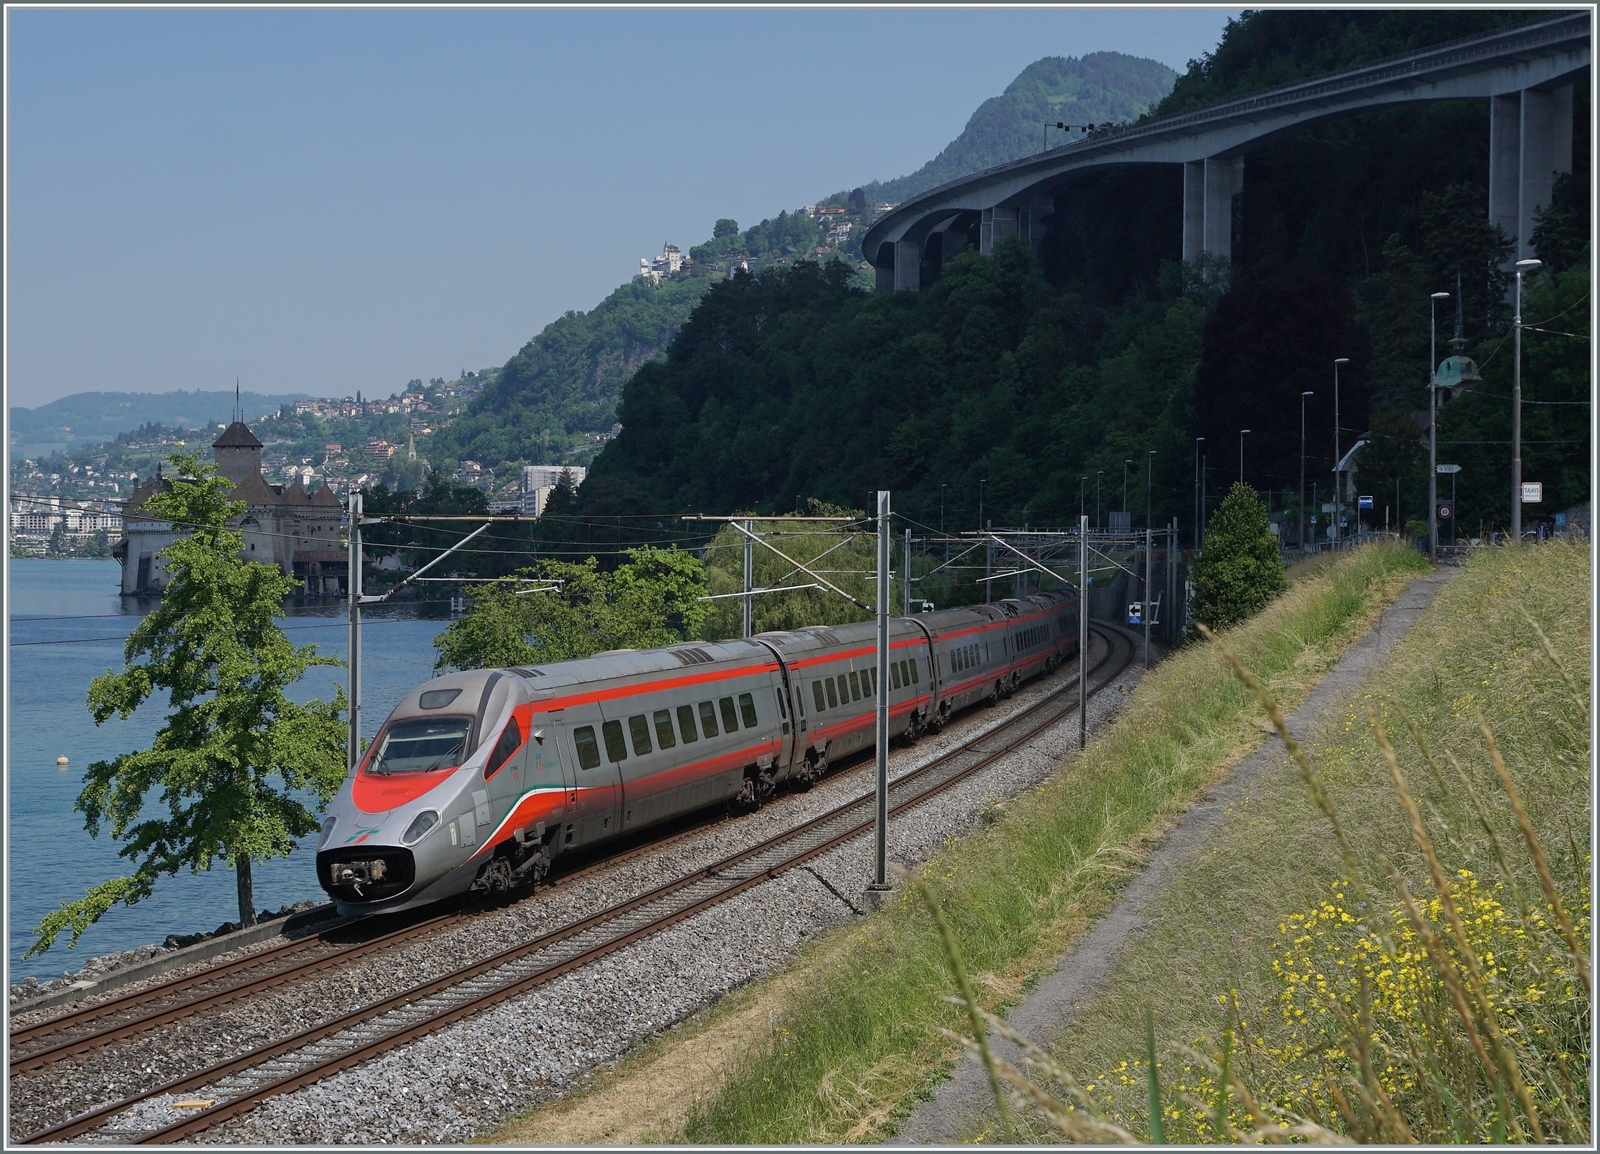 Der FS Trenitalia ETR 610 002 ist als EC 32 von Milano nach Genève unterwegs und fährt beim Château de Chillon geradewegs in den dunklen Schatten einer Gewitterwolke. Ob und falls ja,  wann werden die ETR 610 in der neuen und für diese Züge besonders passenden Frecciarossa Lackierung zu sehen sein? 

31. Mai 2023